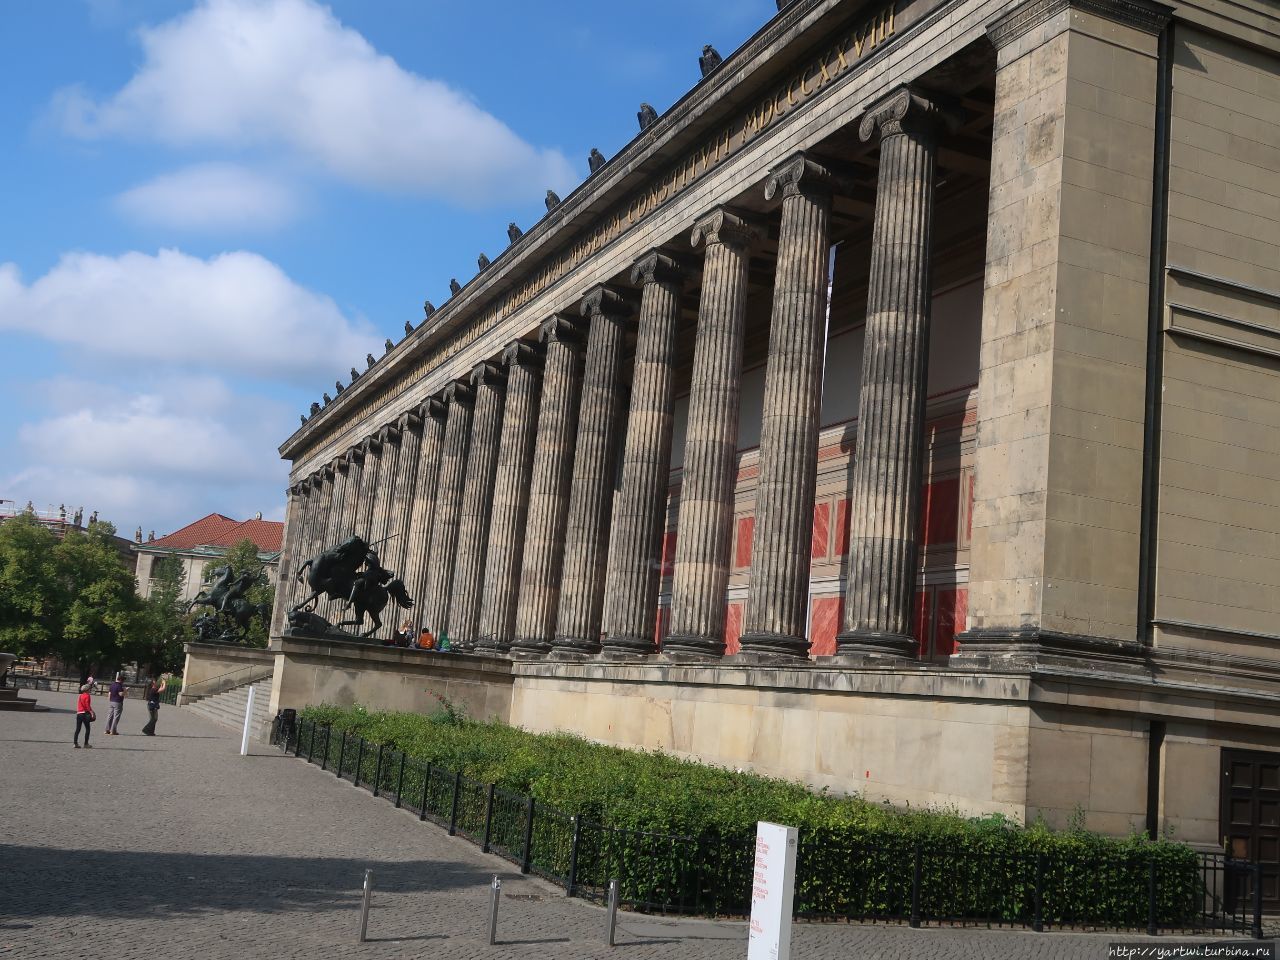 Вторая остановка в Берлине — Музейный остров возле Берлинского кафедрального собора. Посещаем музей Альтеса (Altes Museum), в нем хранится коллекция антиквариата. Музей Альтеса был назван объектом Всемирного наследия ЮНЕСКО. Берлин, Германия